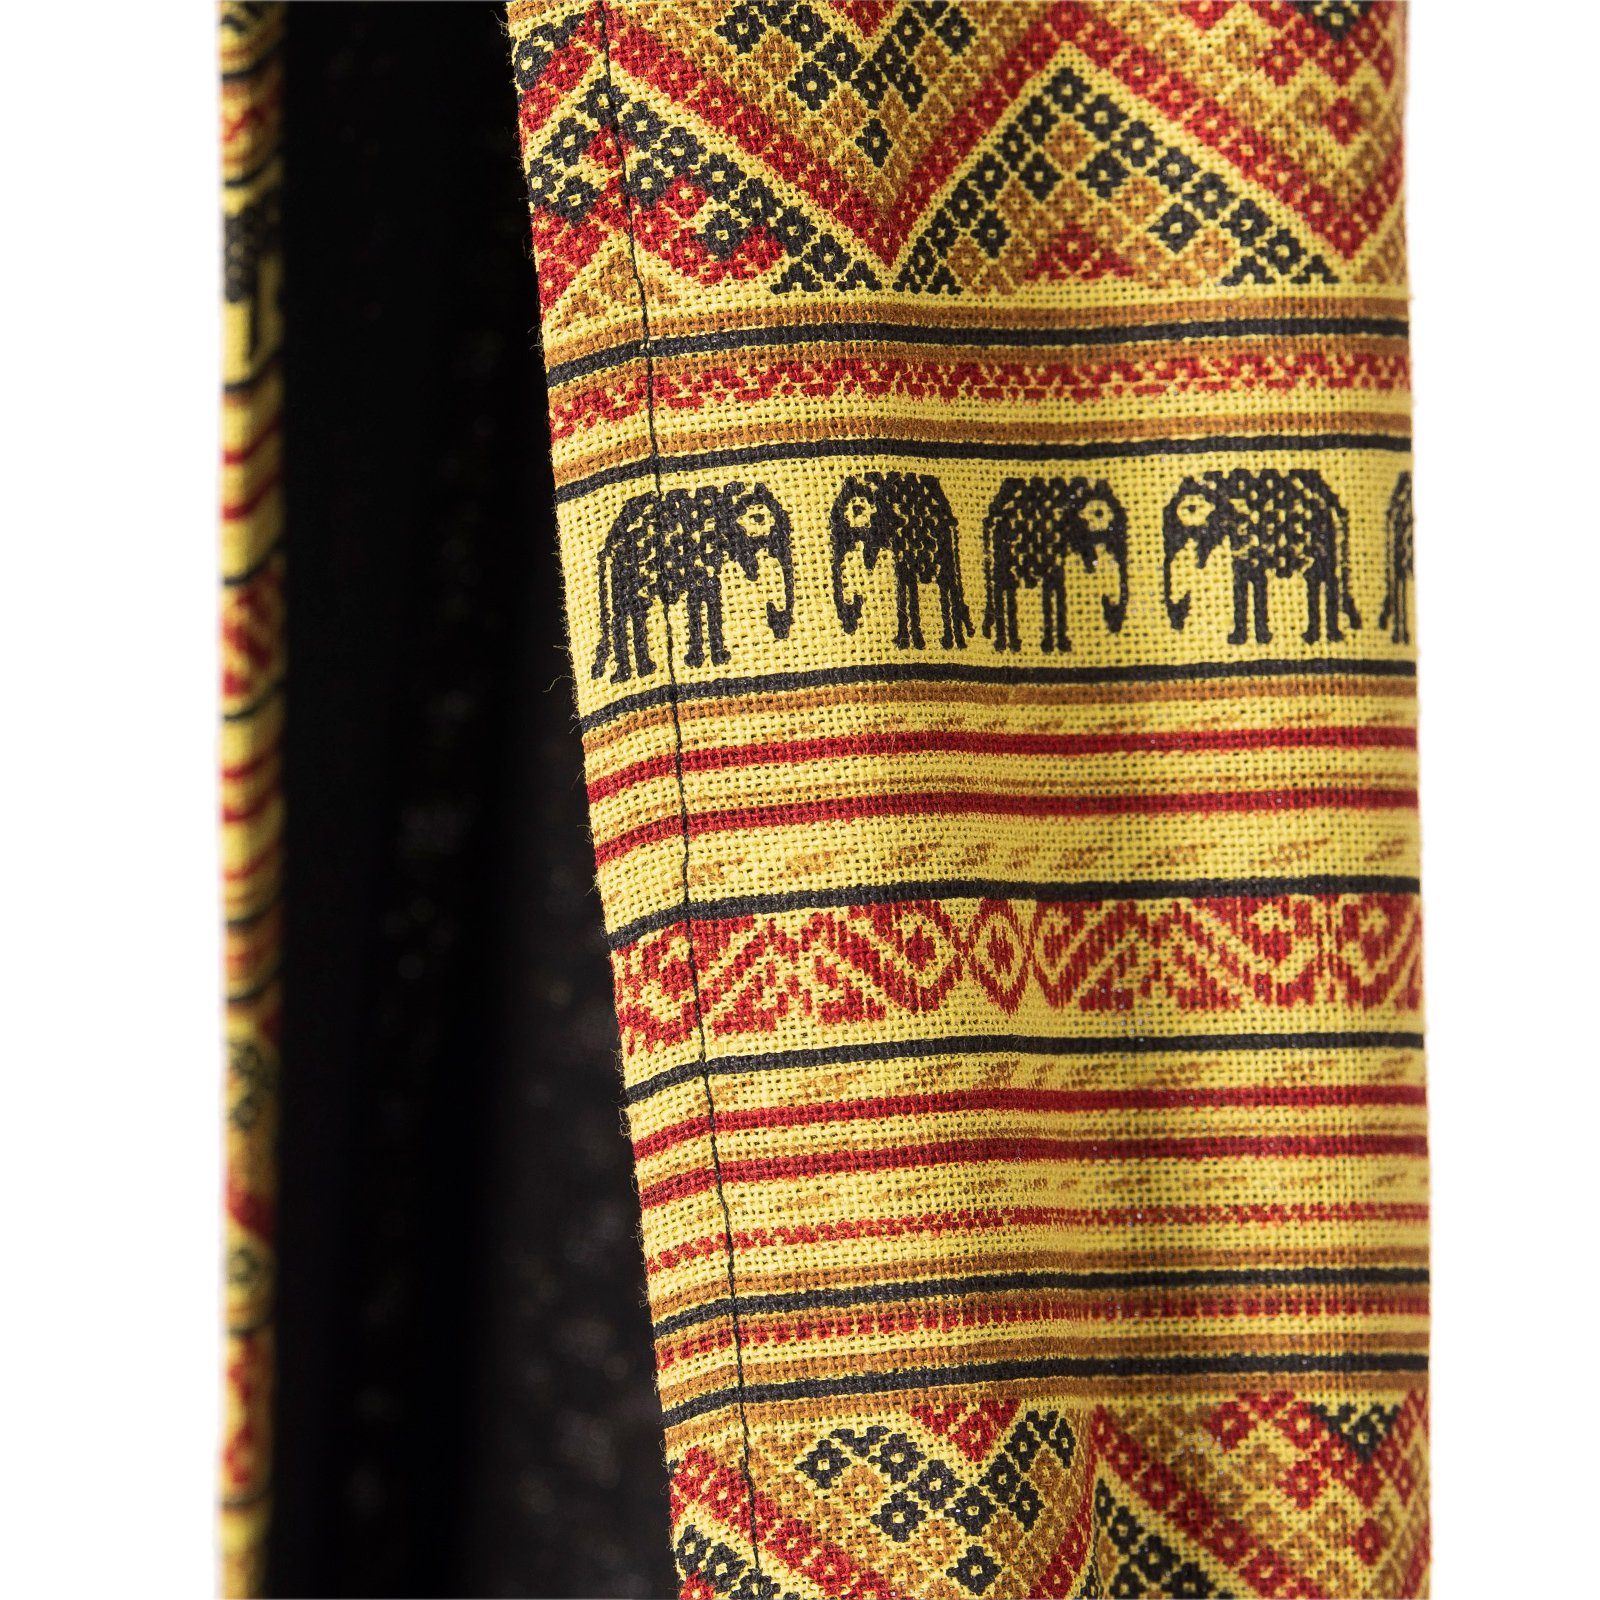 PANASIAM Umhängetasche Schulterbeutel Handtasche aus in Elefant Grünton Größen, 2 als oder geeignet Beuteltasche Wickeltasche Strandtasche Baumwolle 100% Schultertasche